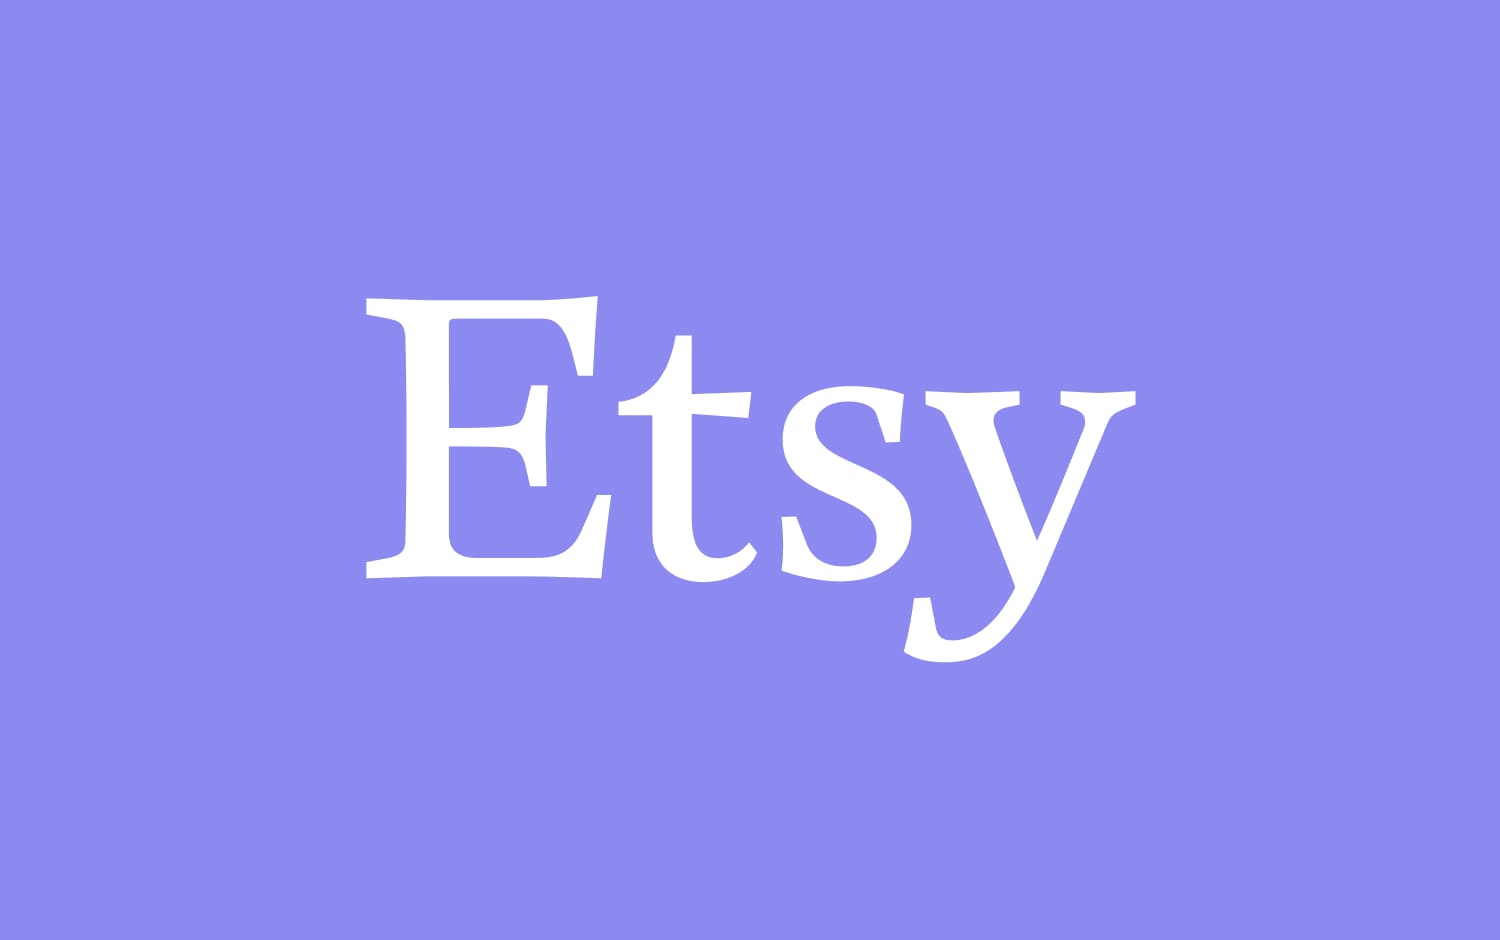 Logo di Etsy con caratteri bianchi su sfondo lavanda